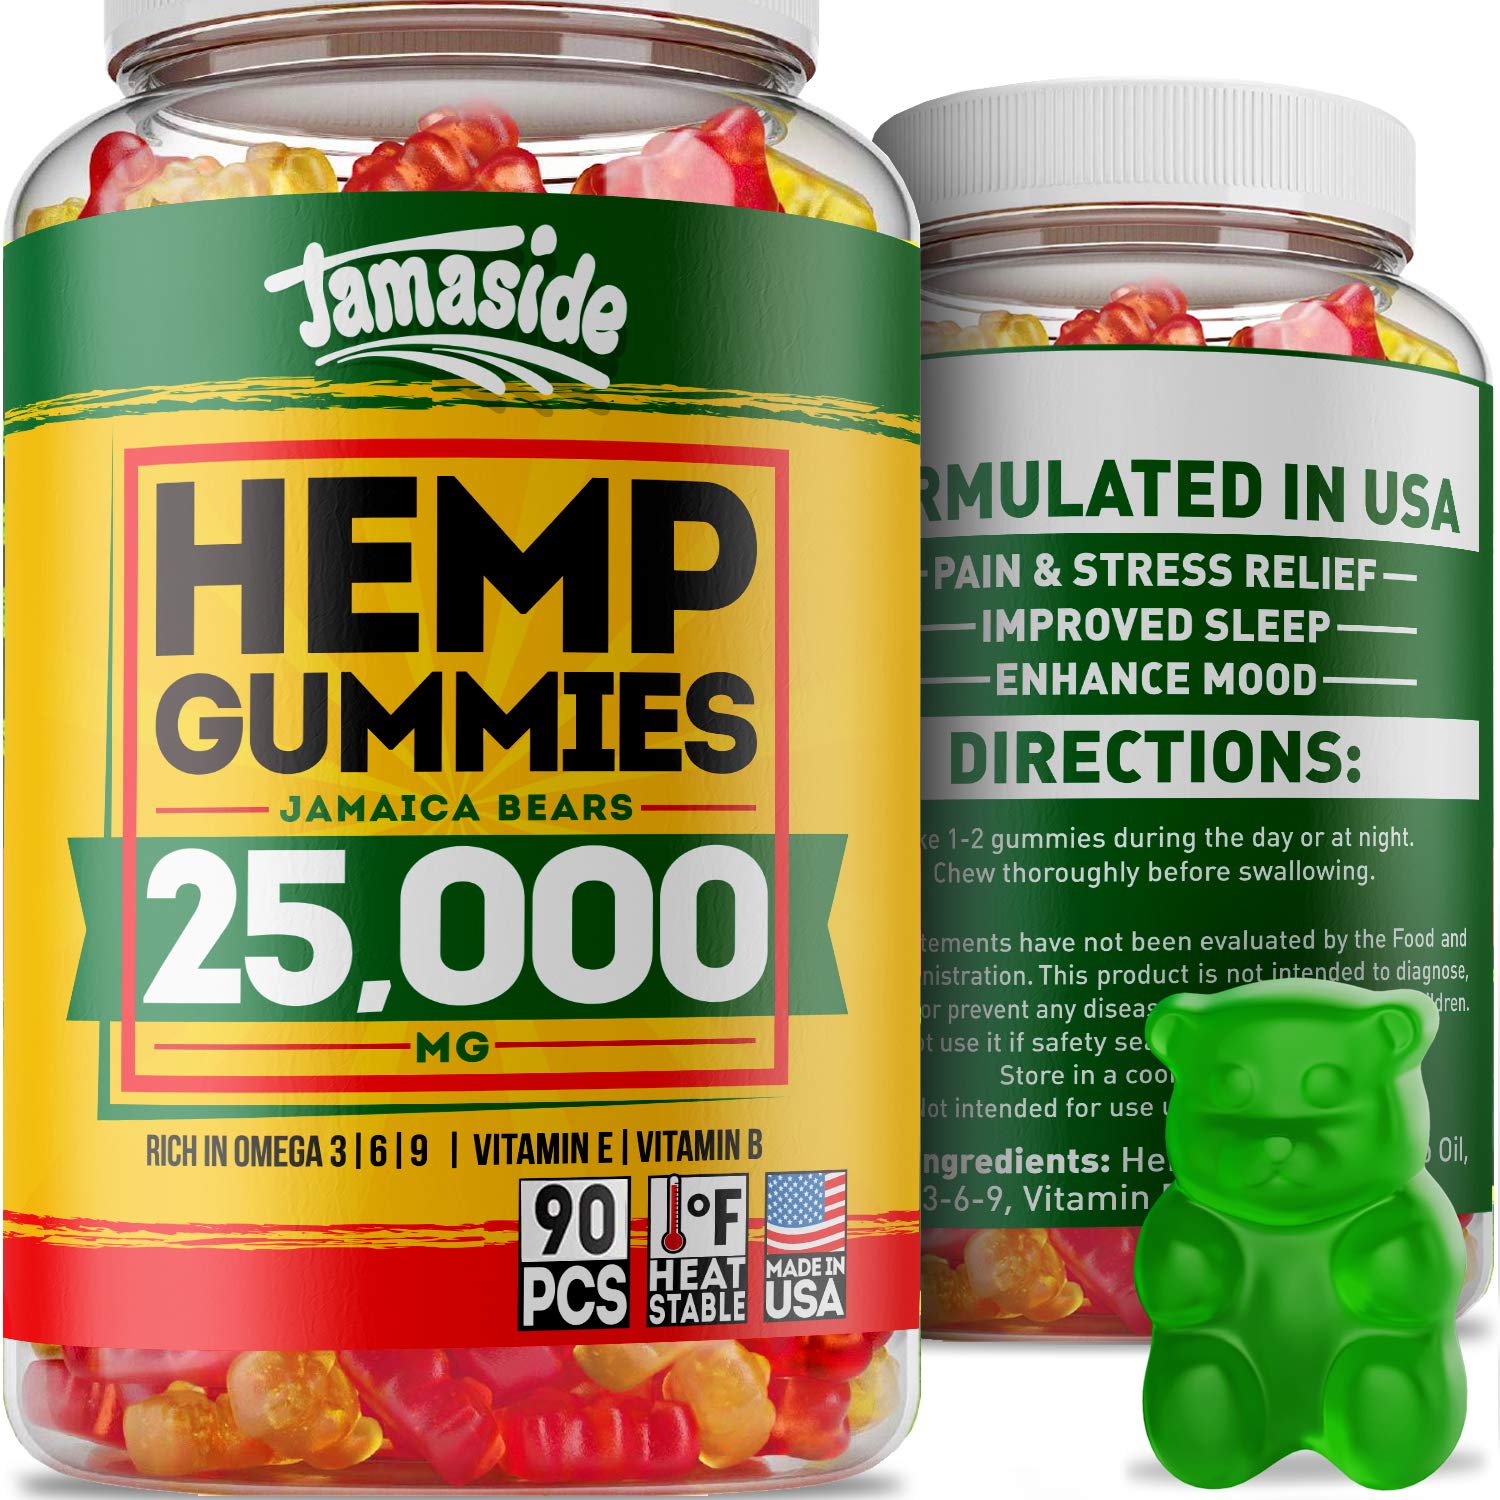 Hemp Gummies 25000 MG - Made in USA - 277 MG Hemp - Anxiety & Stress Relief, by Jamaside